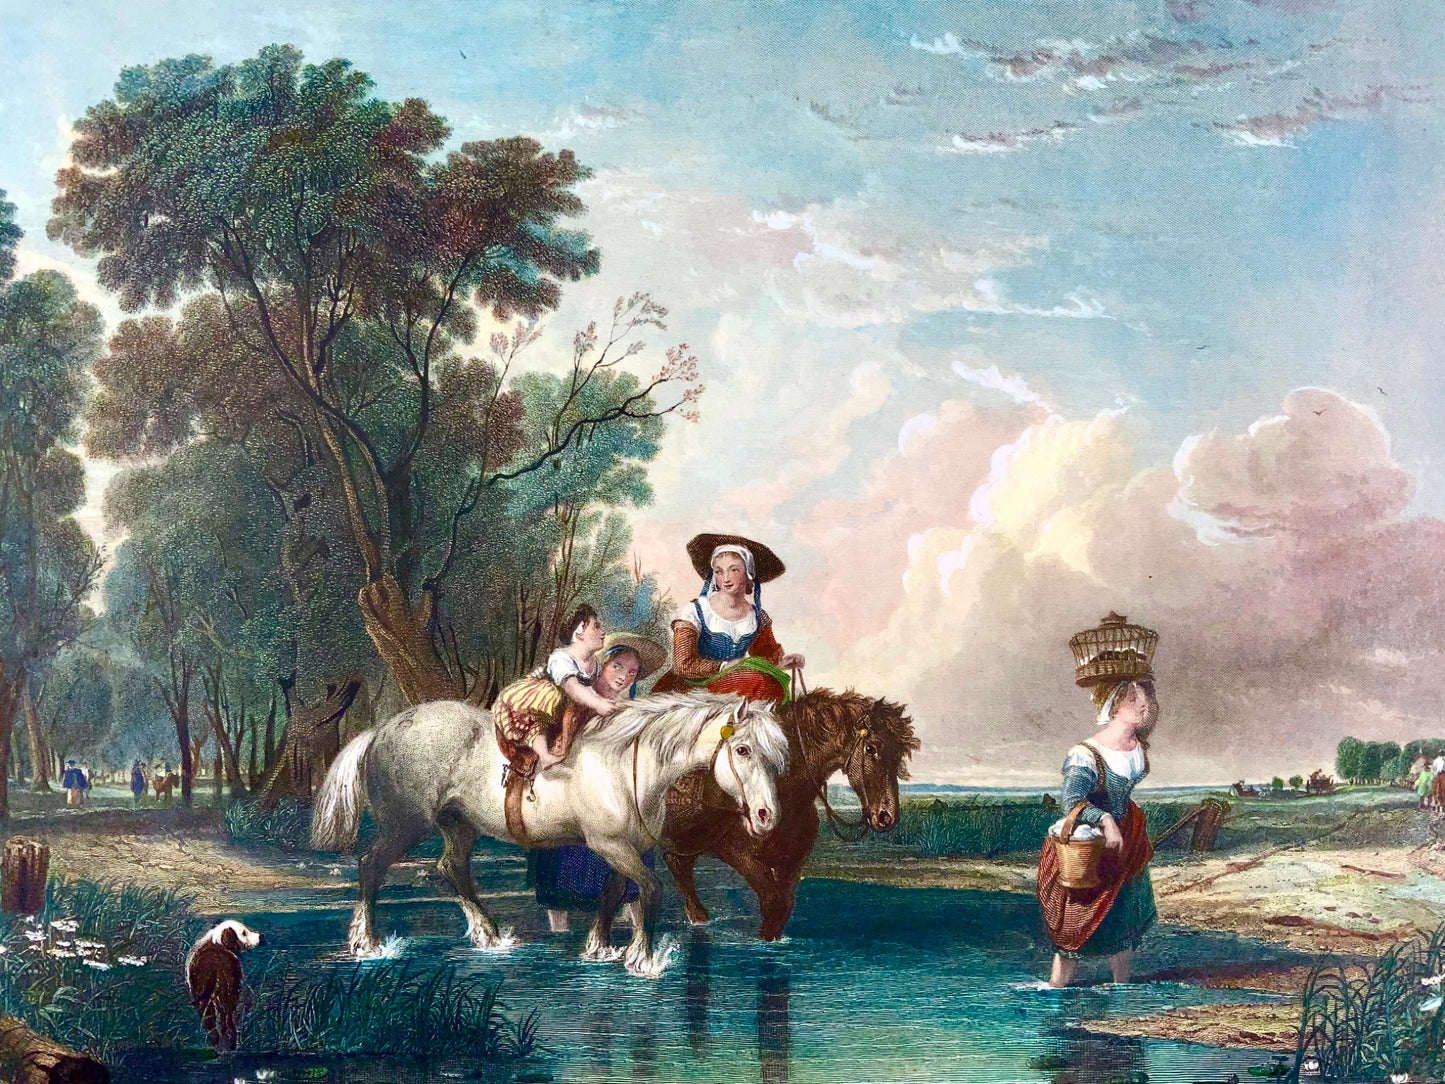 1845 De retour du marché, AW Calcott, très grande gravure colorée de 55 cm, paysage